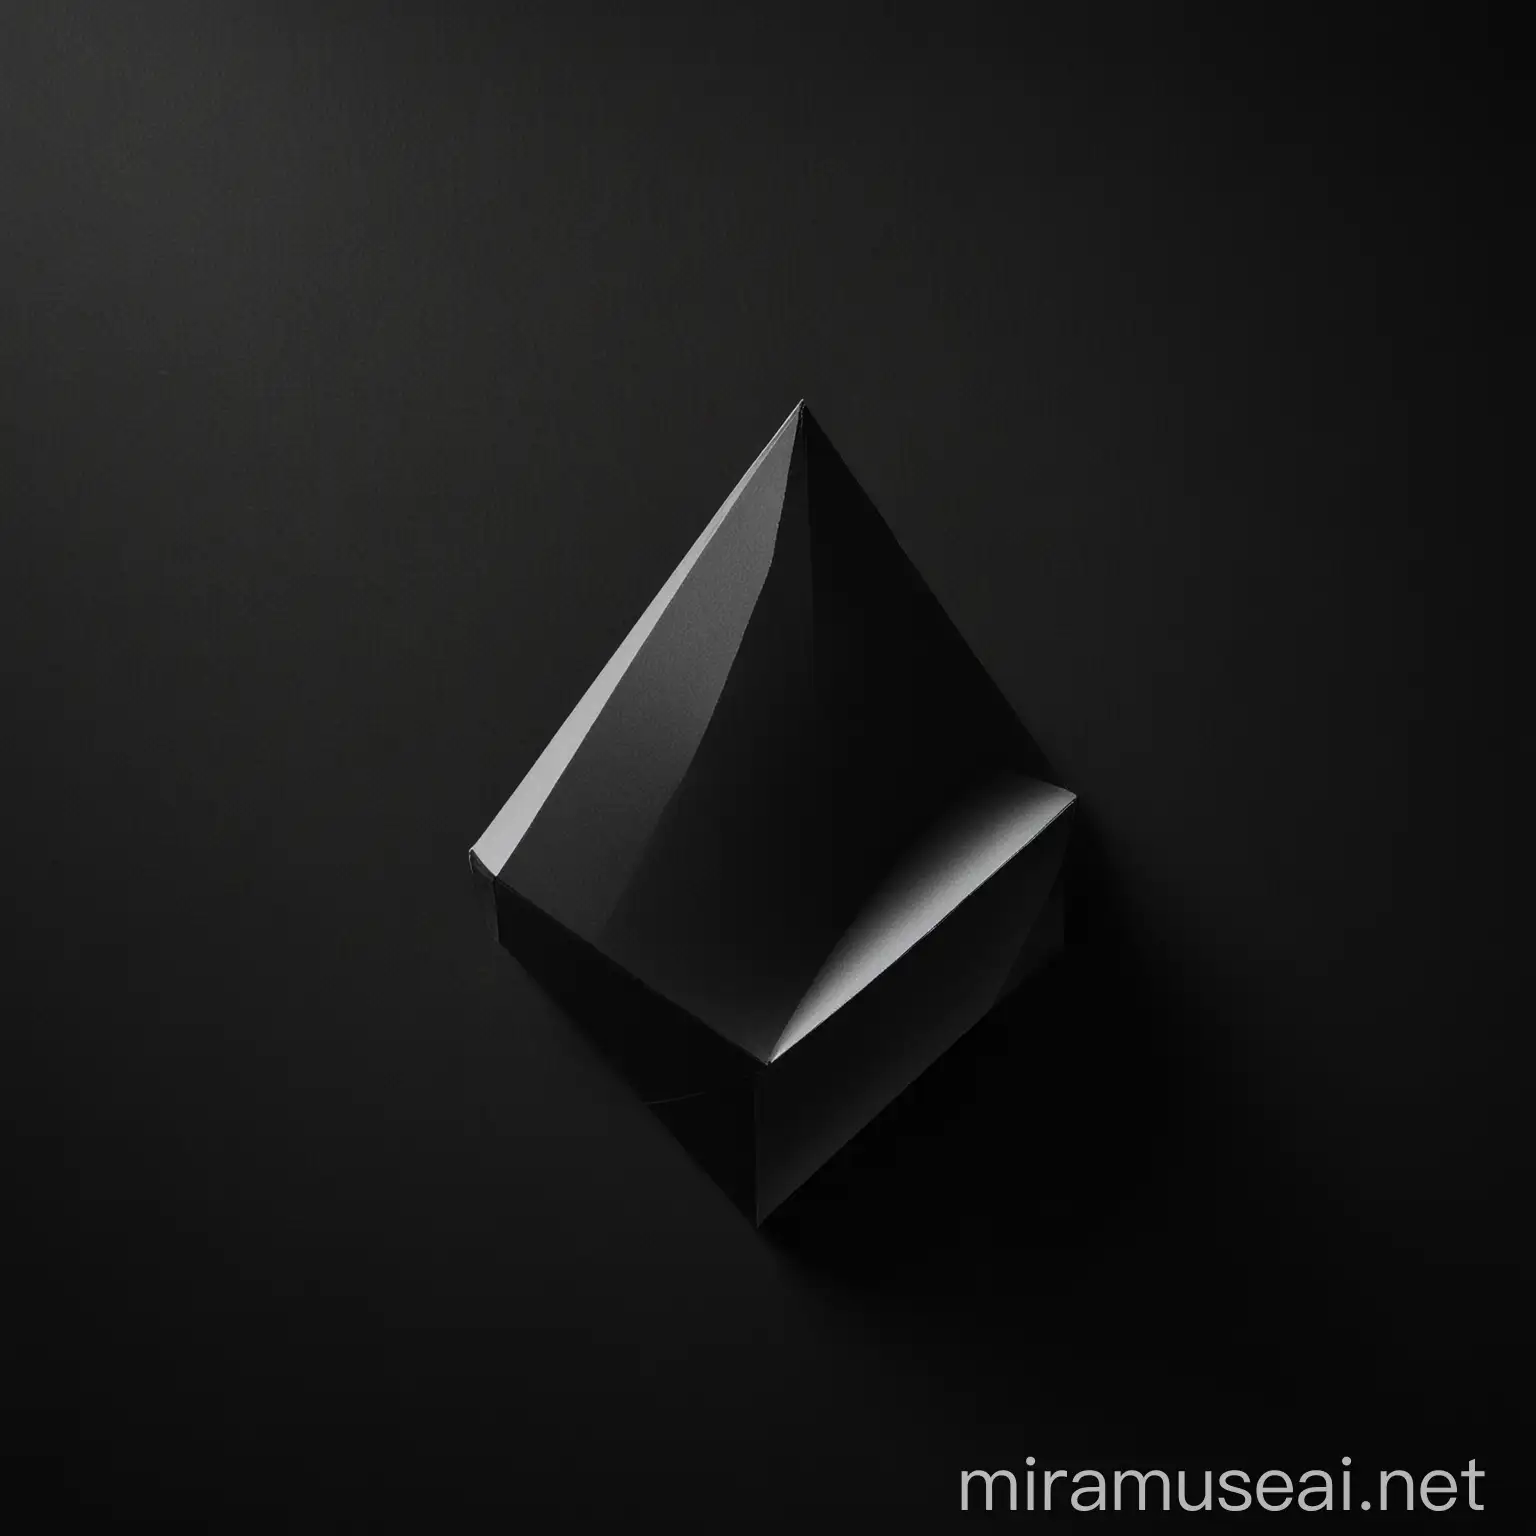 Minimalist White Geometric Shape on Black Background